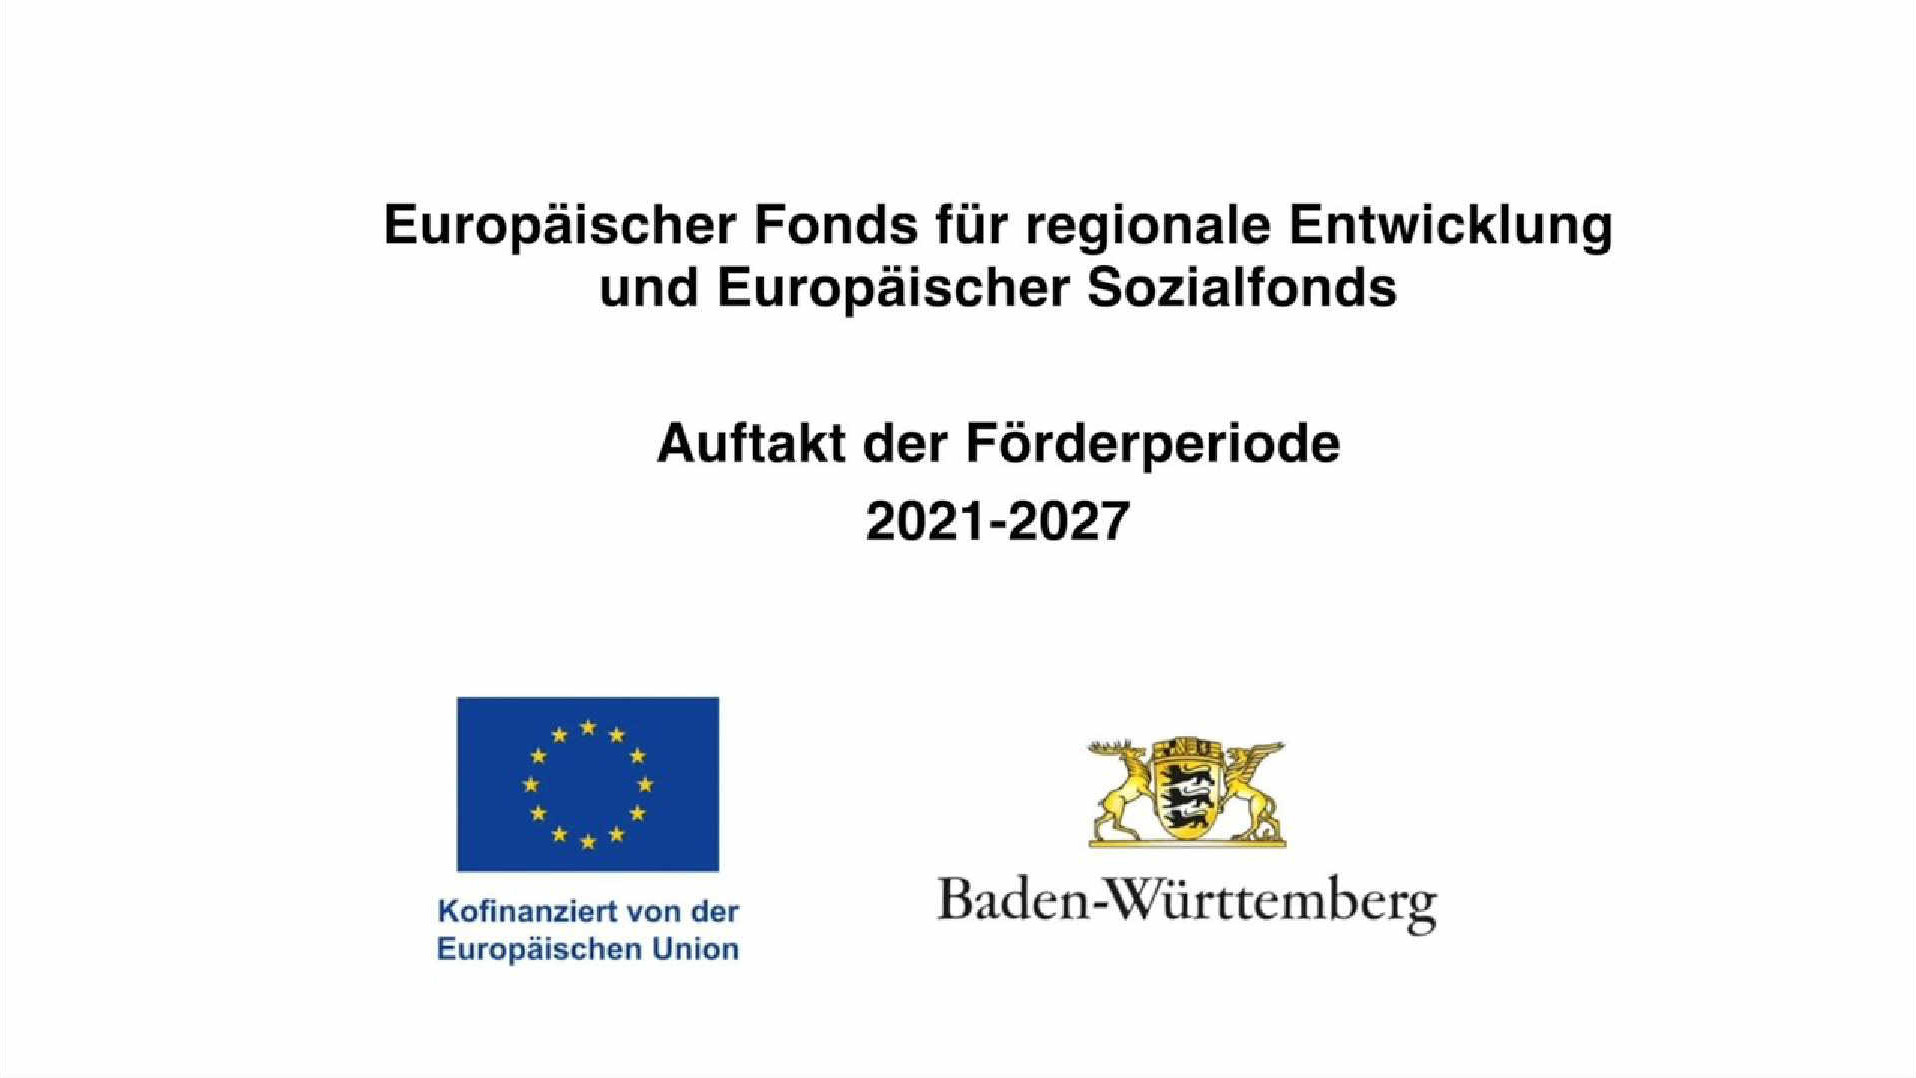 Startbild Video zu Auftaktveranstaltung EFRE 2021-2027 in Baden-Württemberg